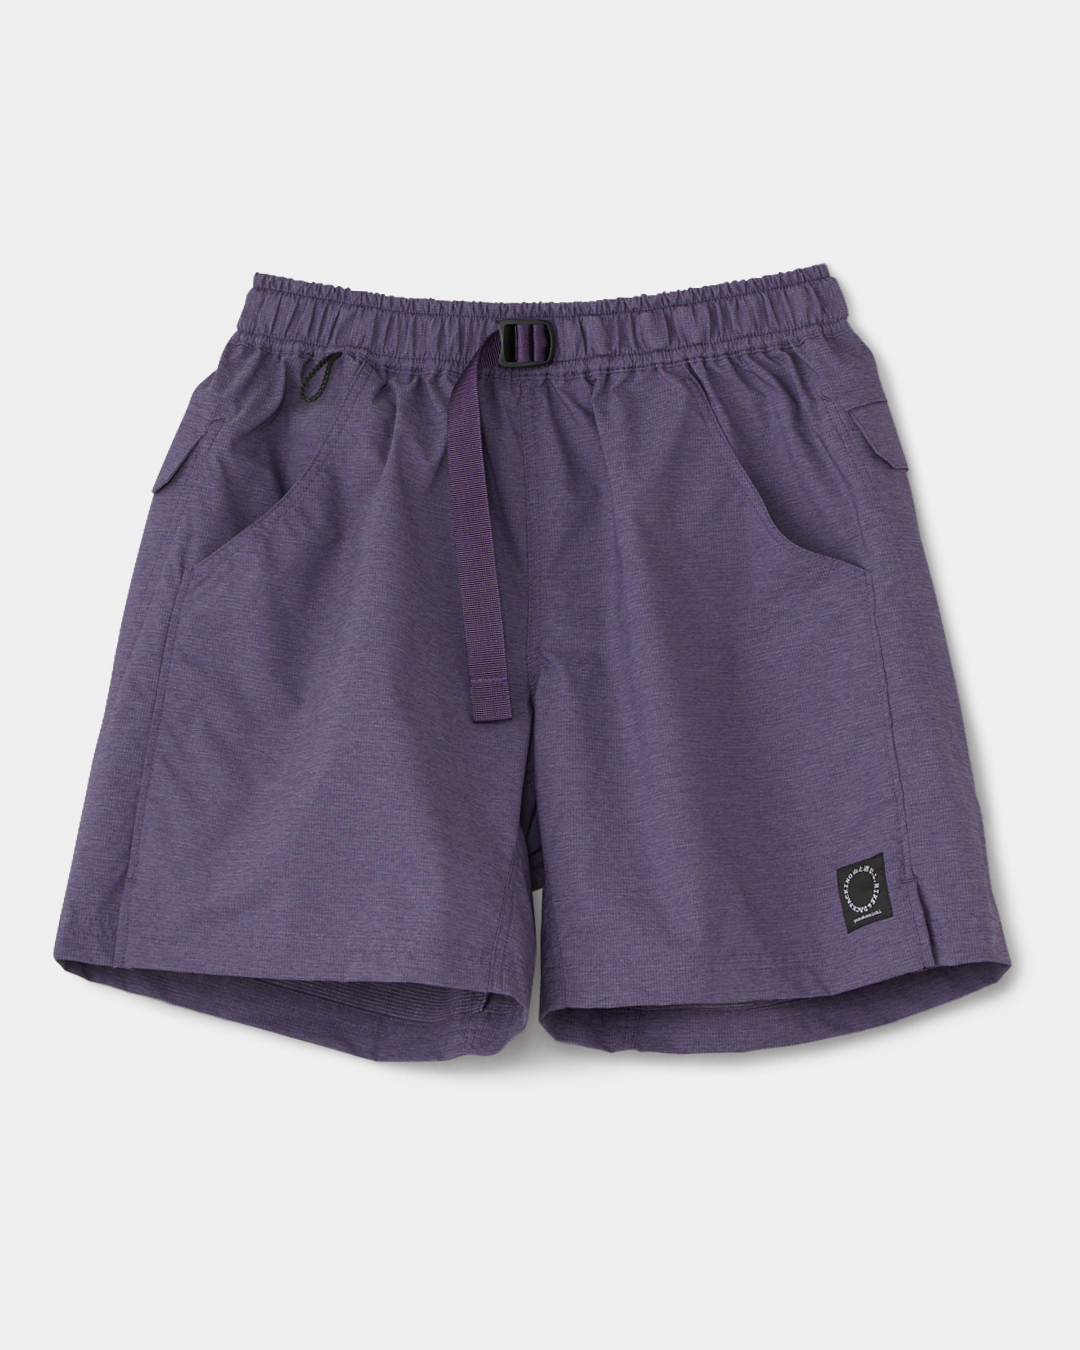 山と道 / 5-Pocket Shorts Light | OUNCE